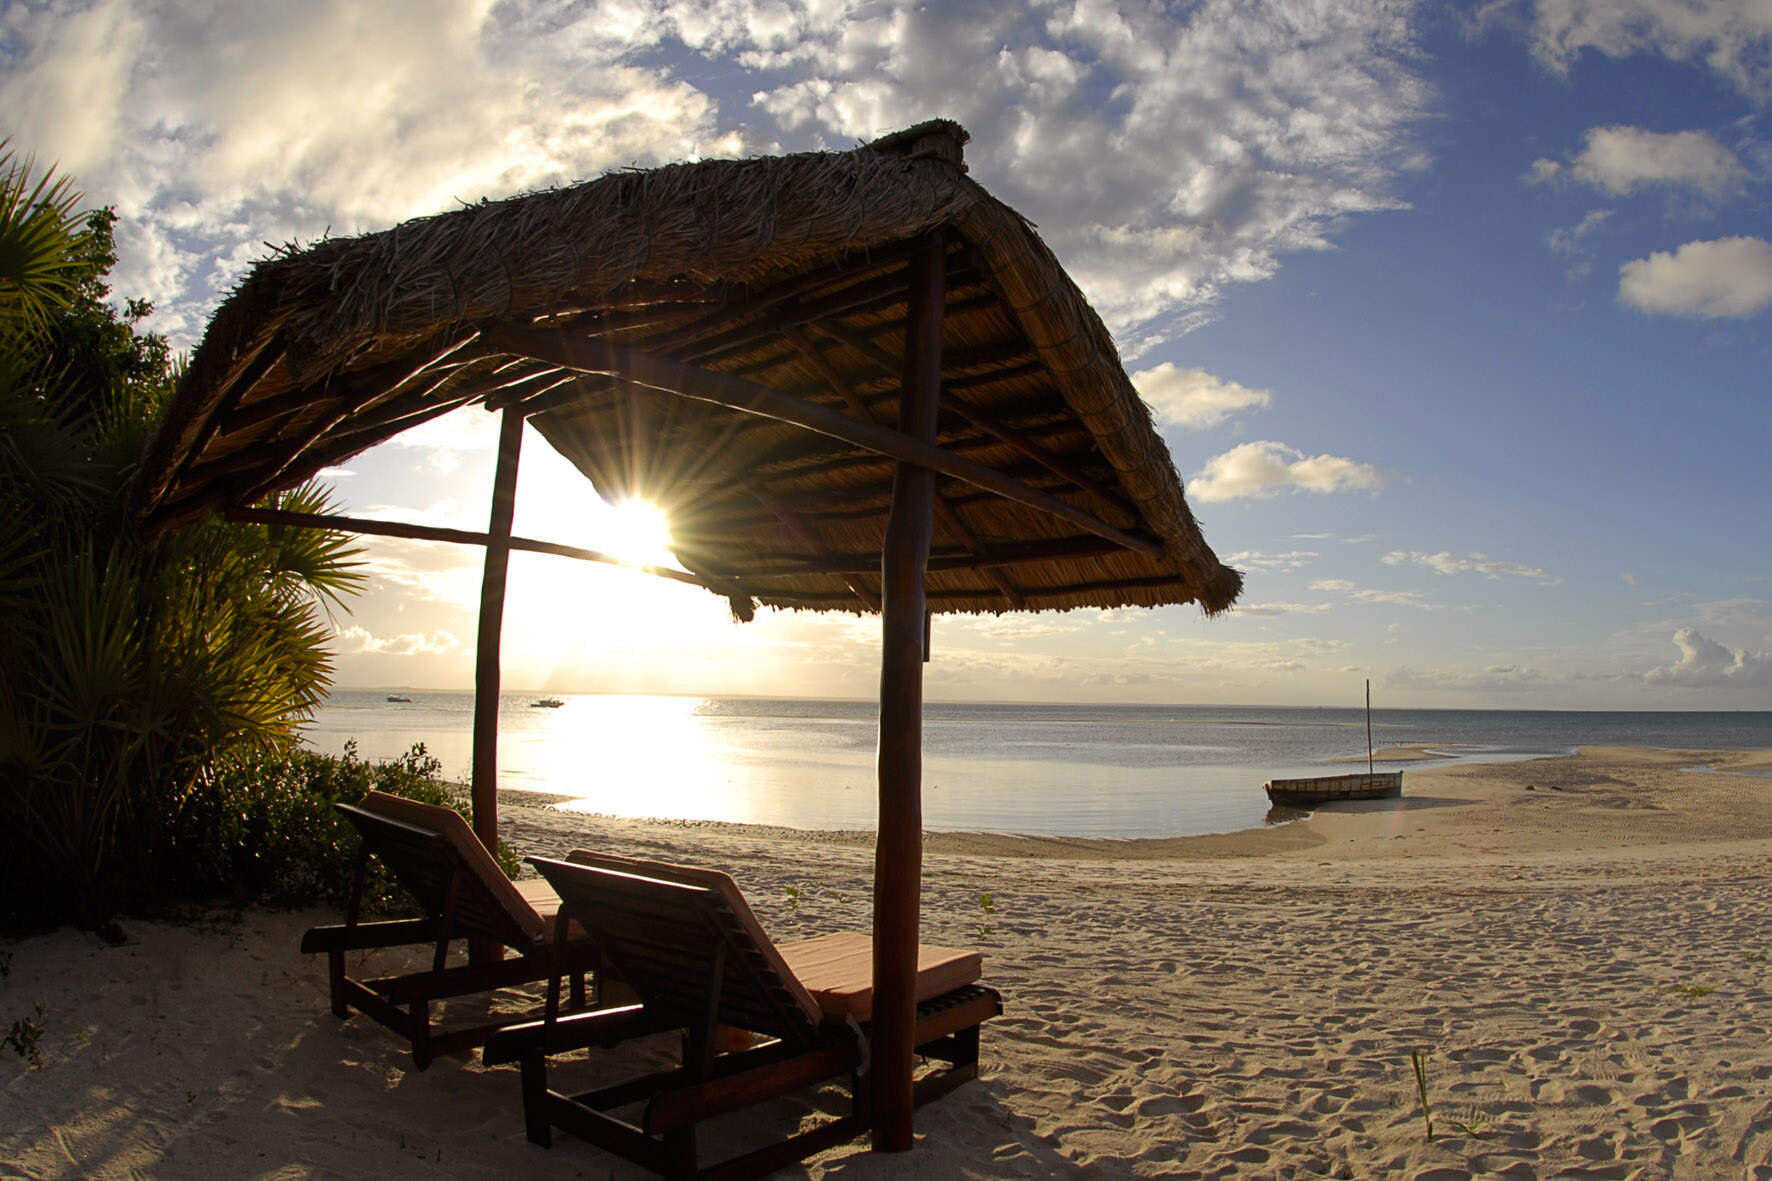 Mozambique islands & archipelagos for beach holidays